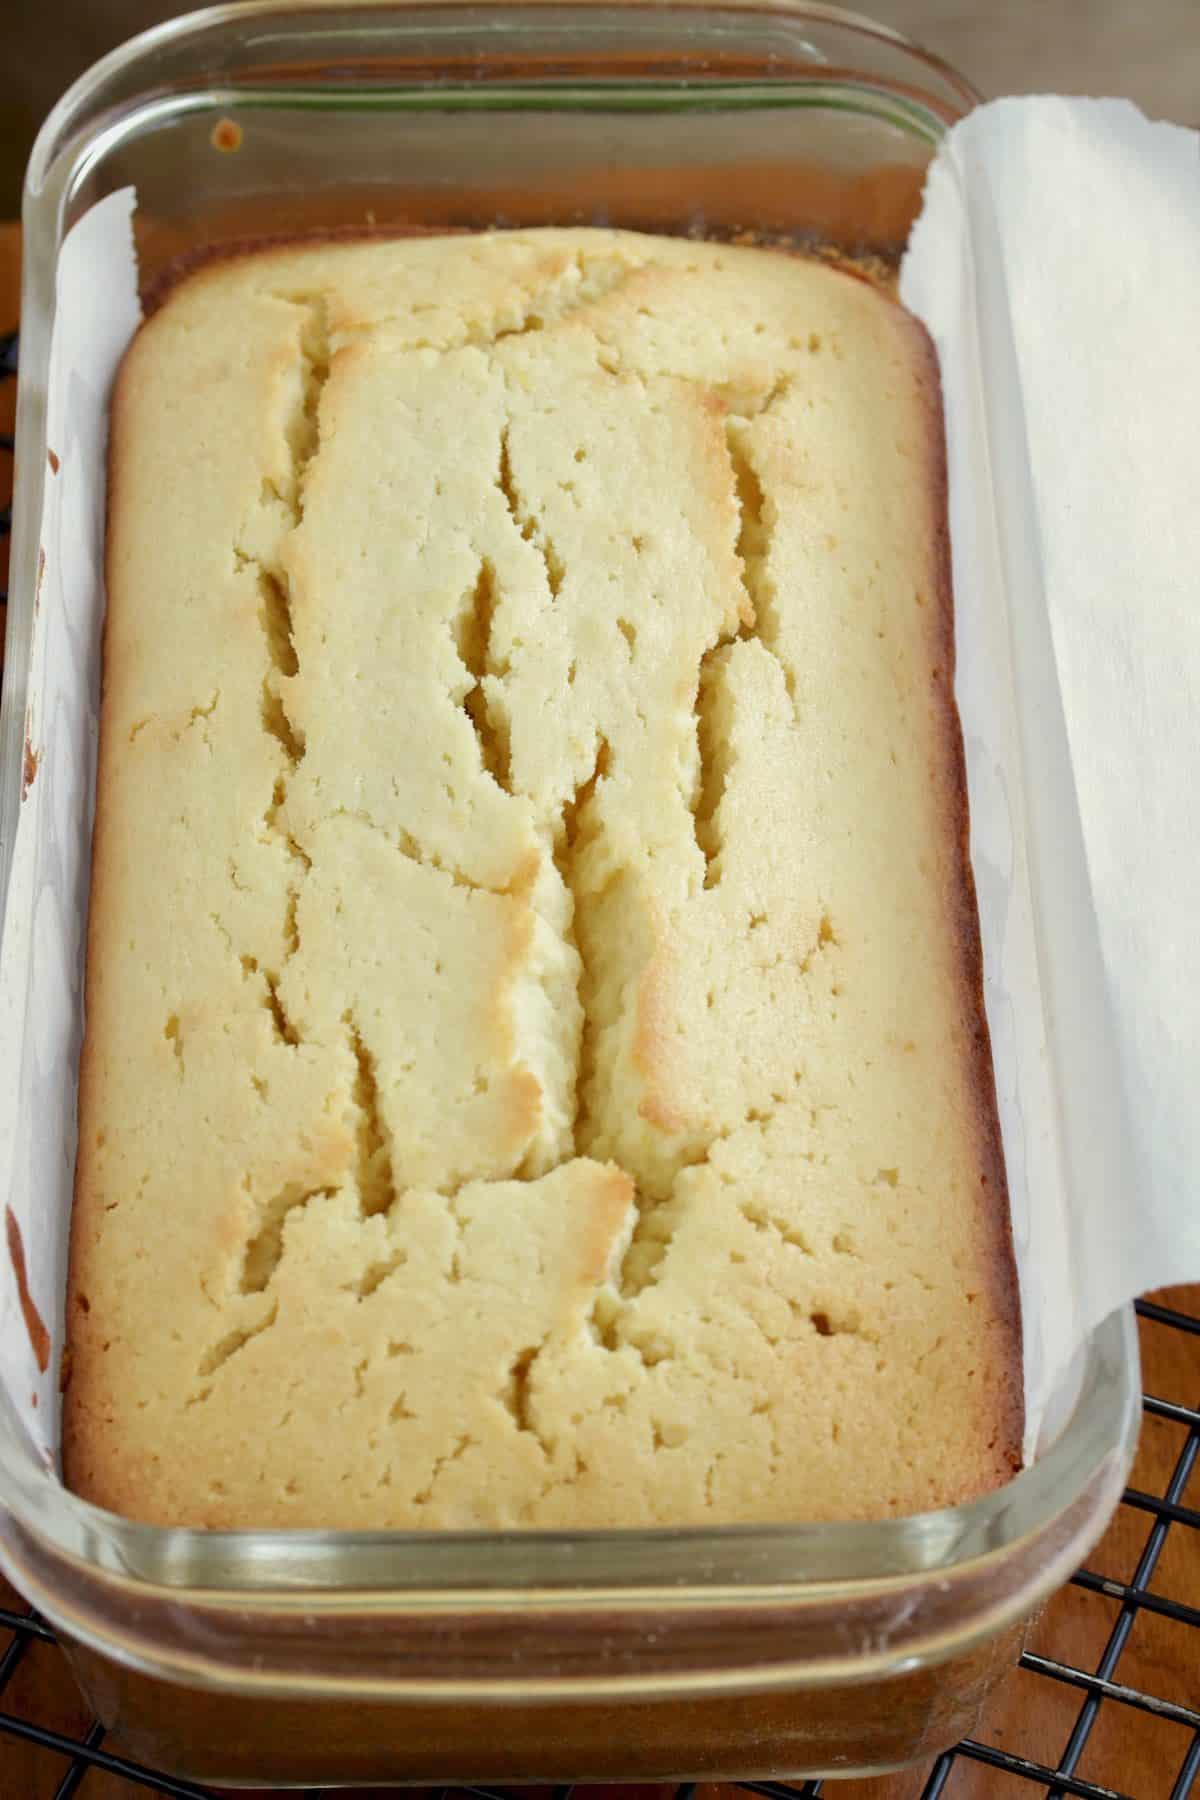 Lemon cake in pan.